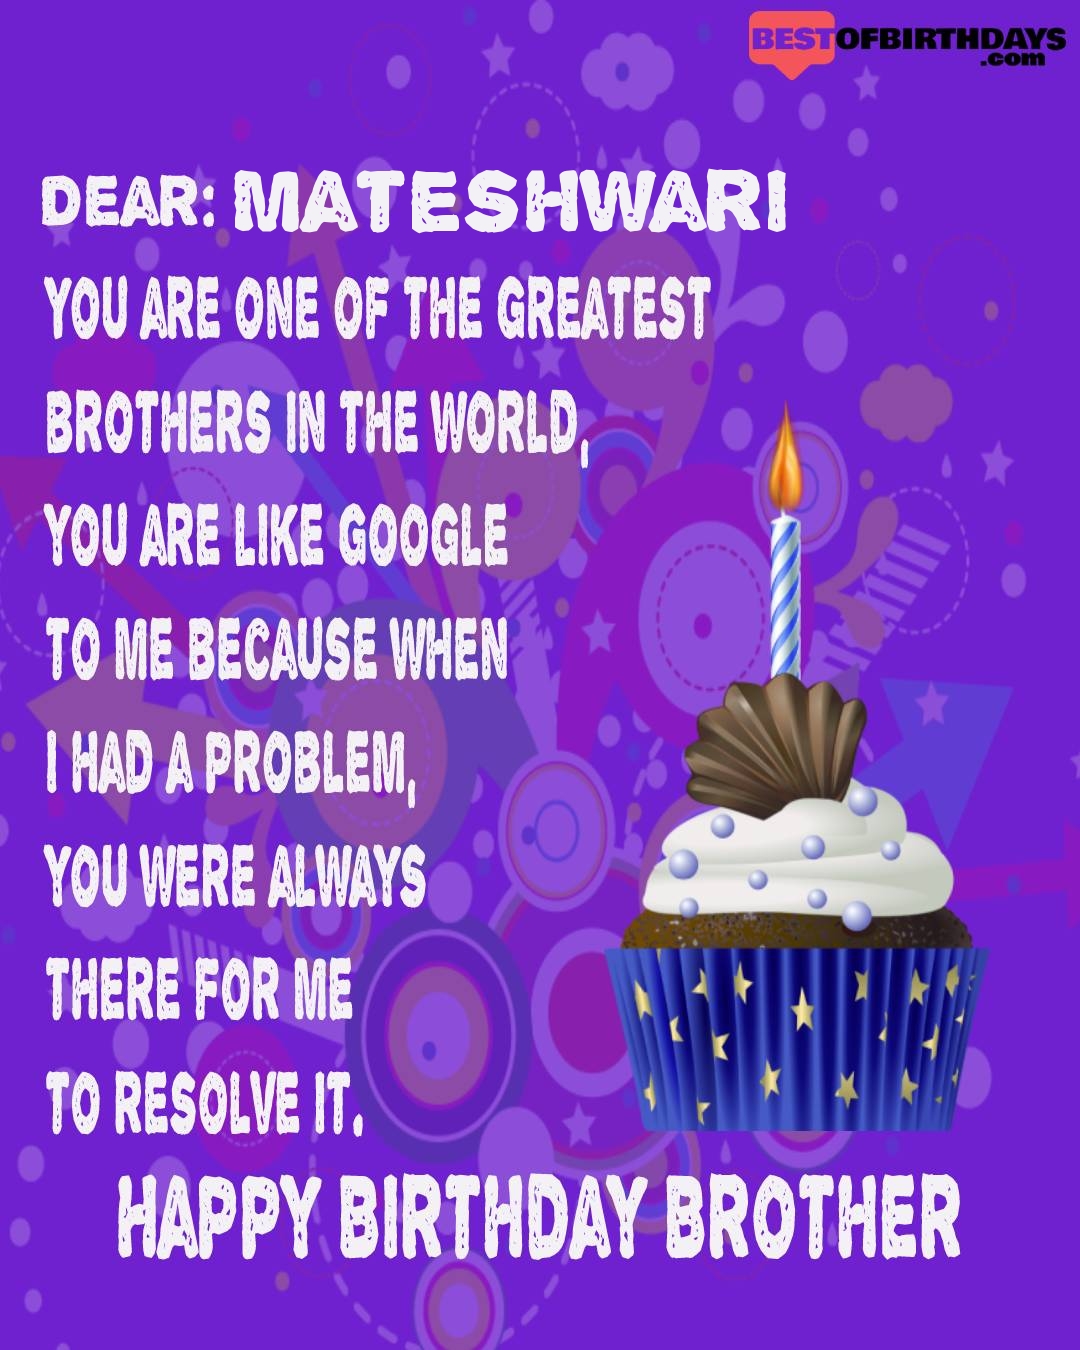 Happy birthday mateshwari bhai brother bro